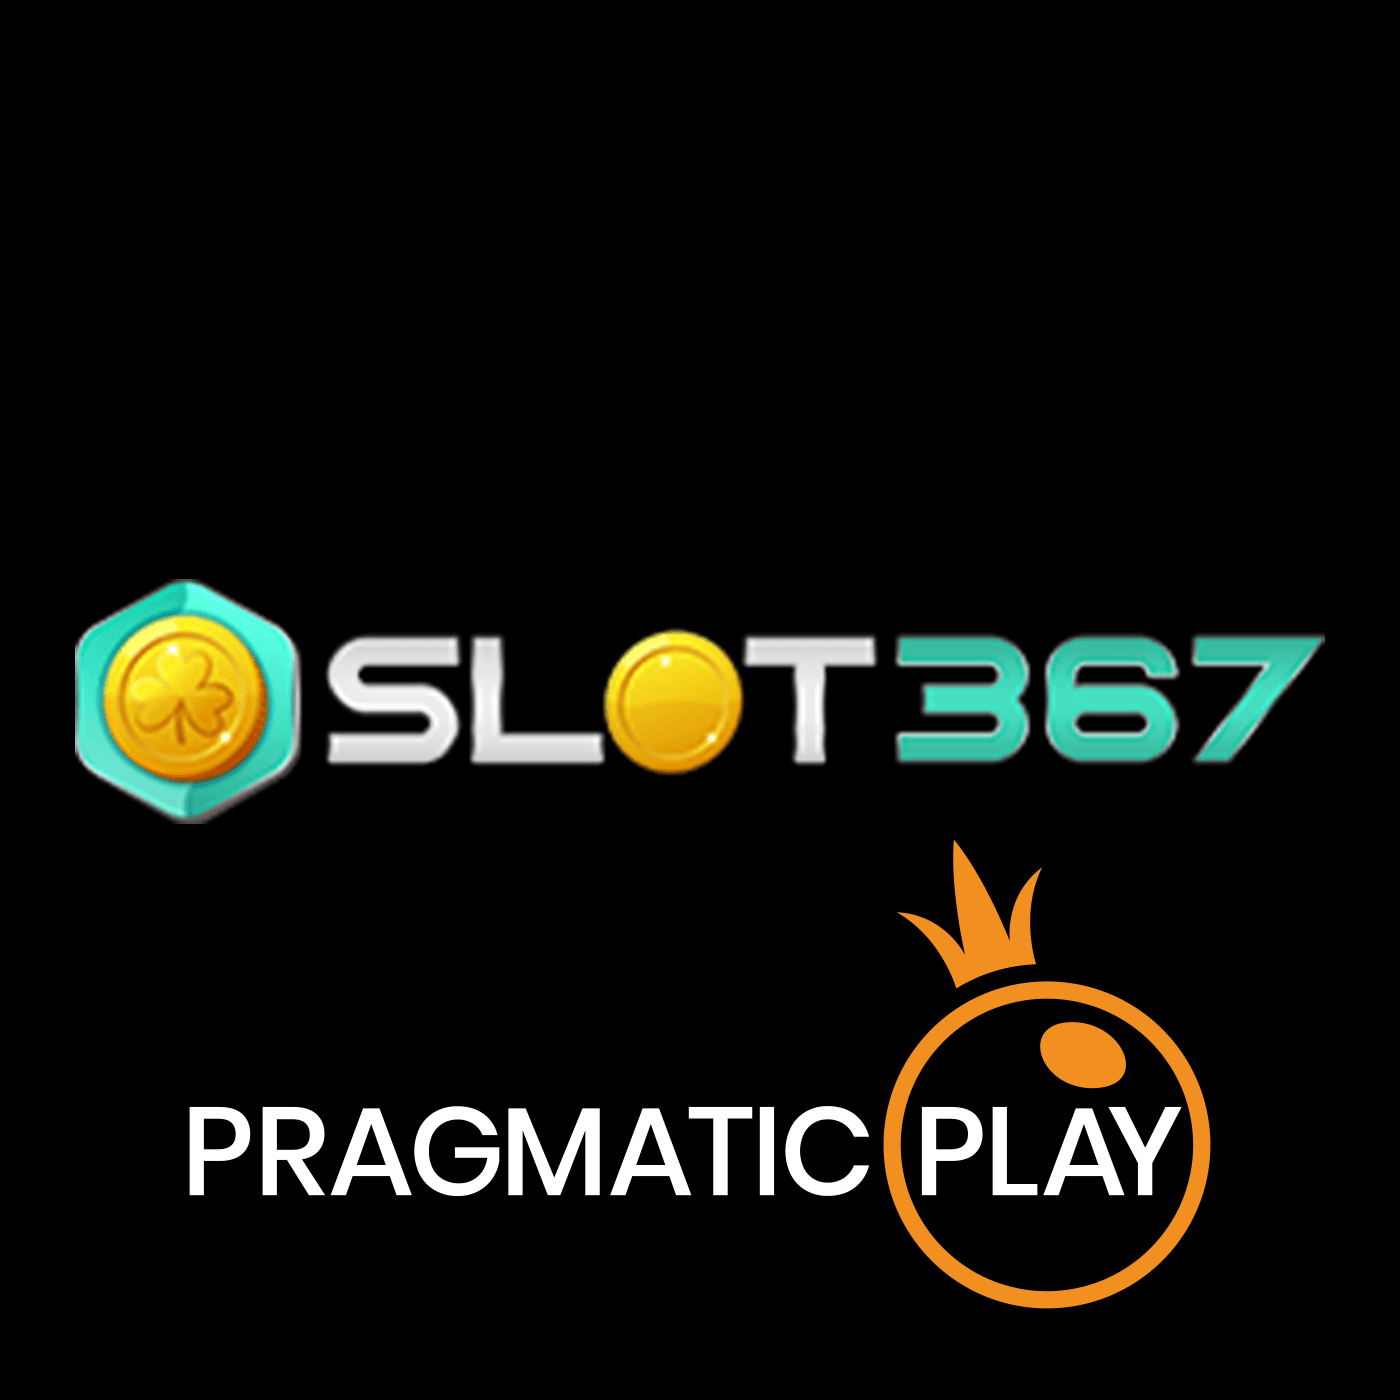 Slot367 横幅